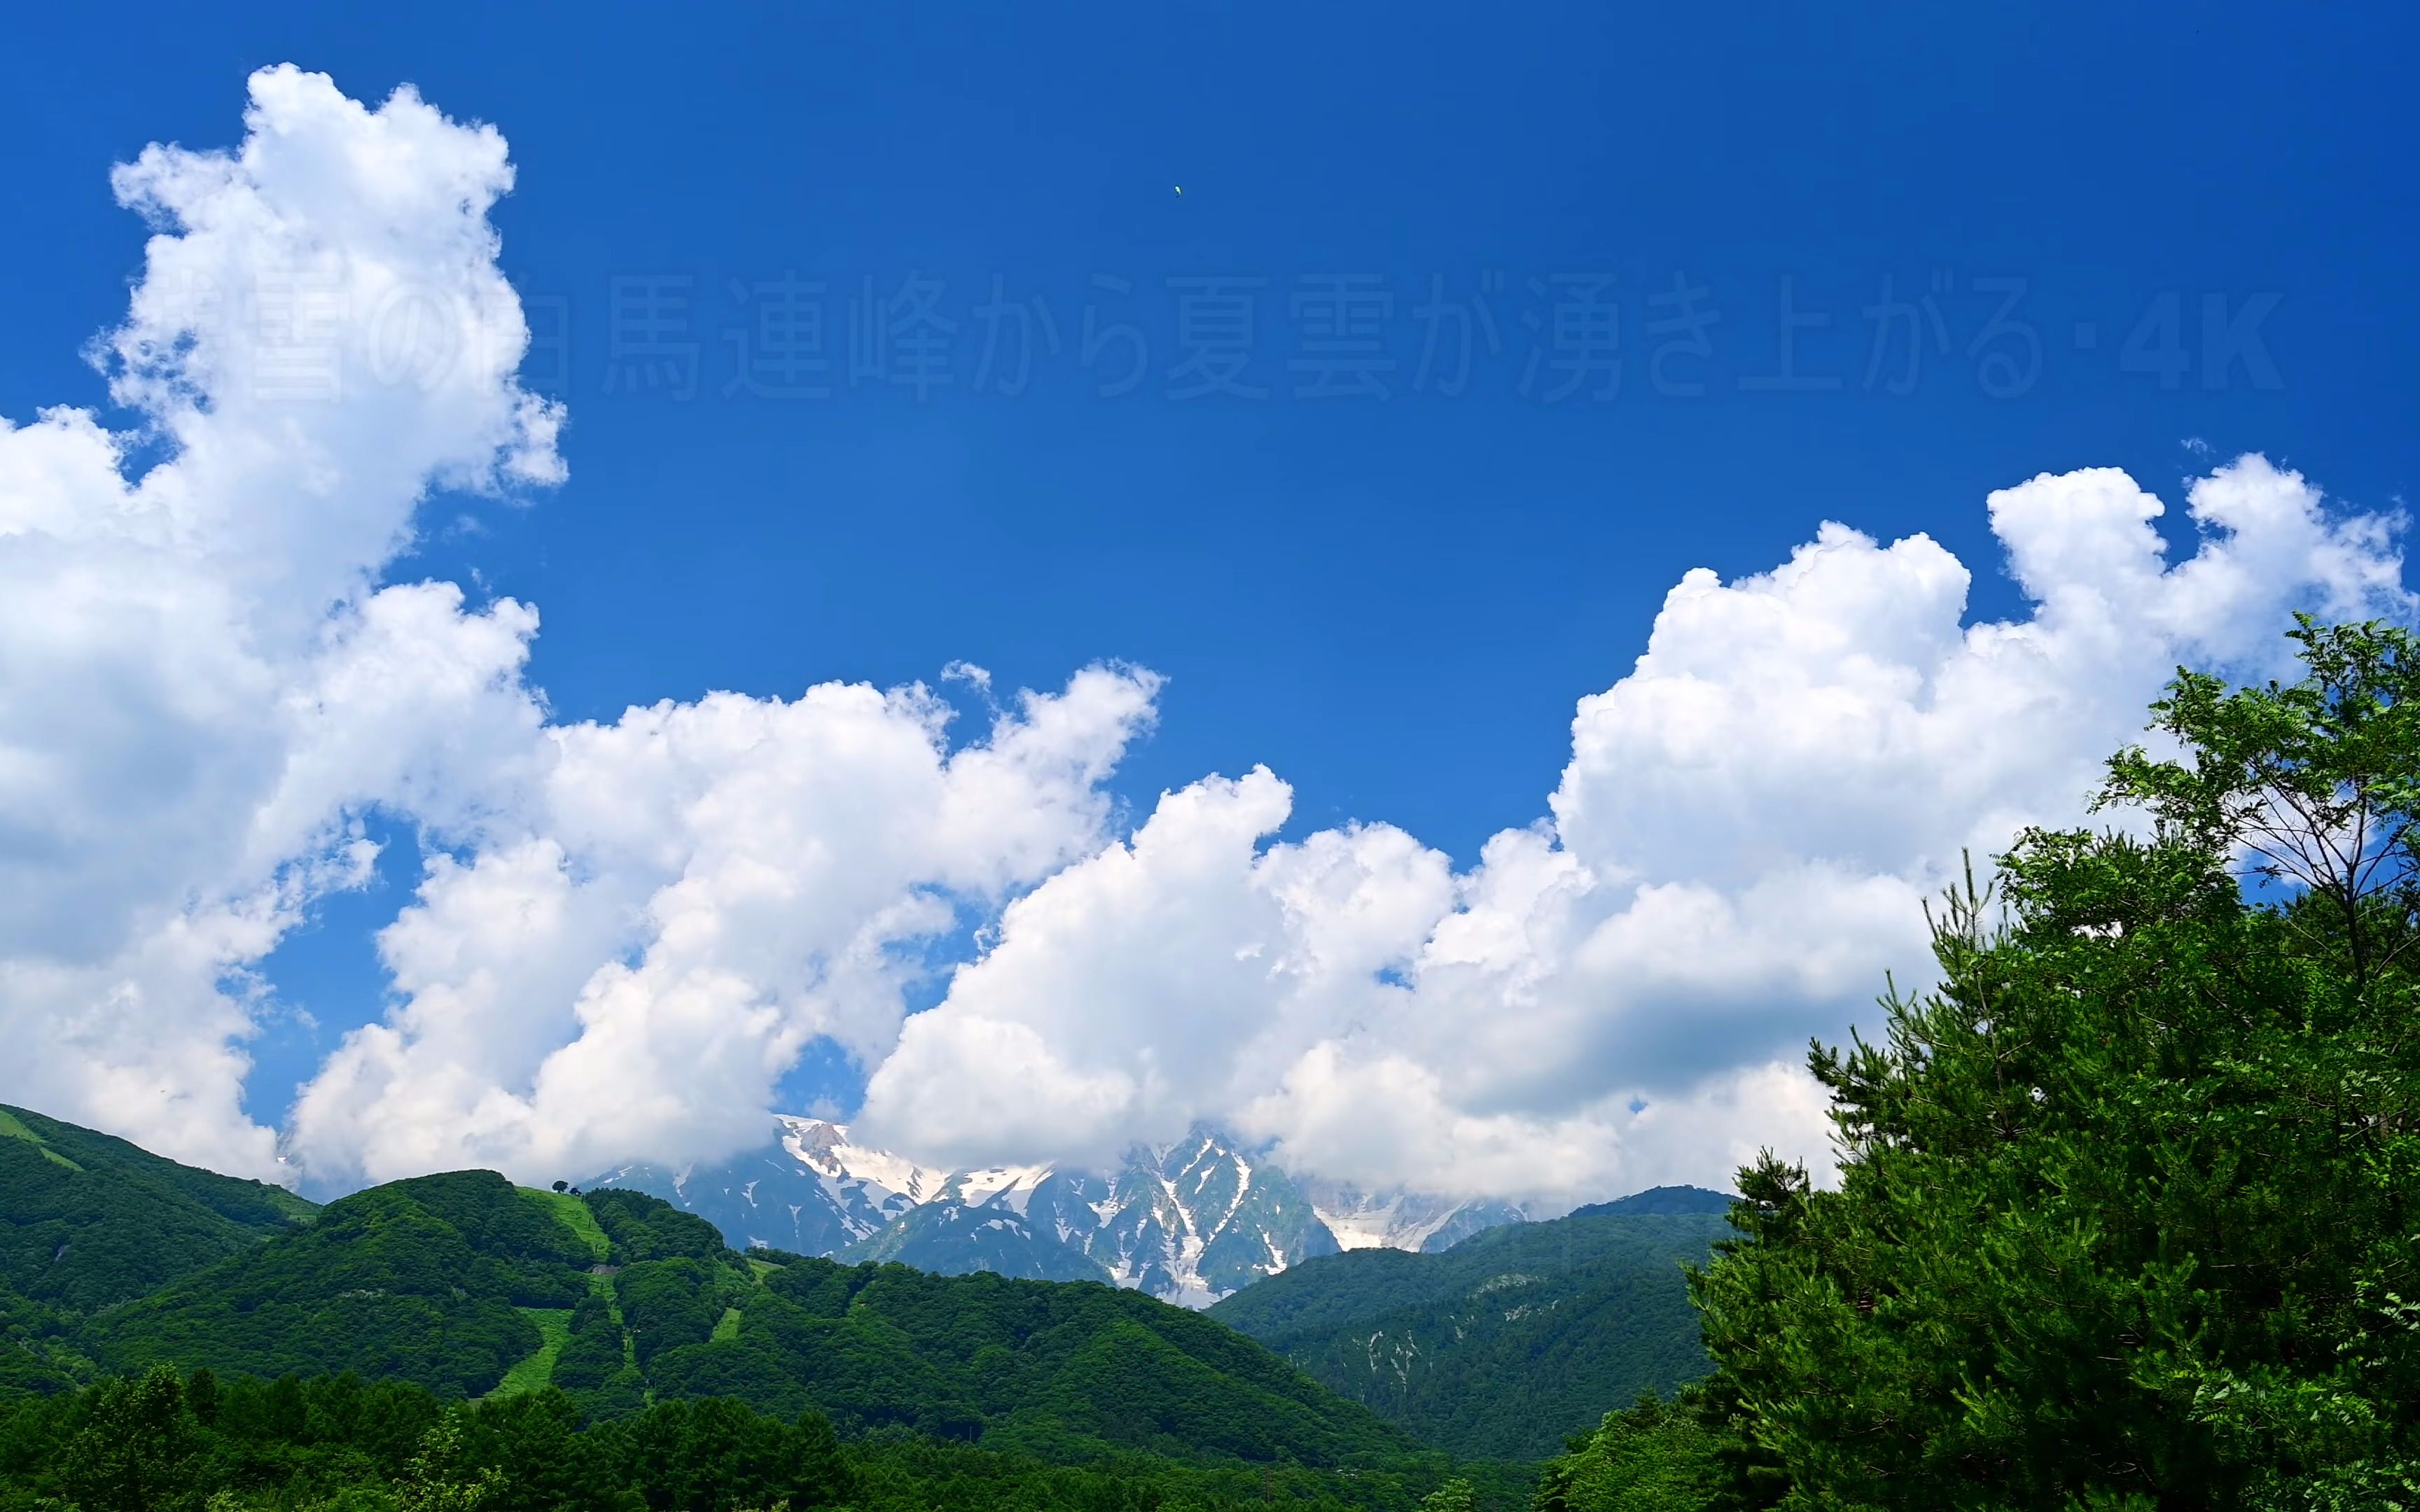 【超清日本】第一视角 从残雪的白马连峰涌出夏云 (4K超清版) 2022.7